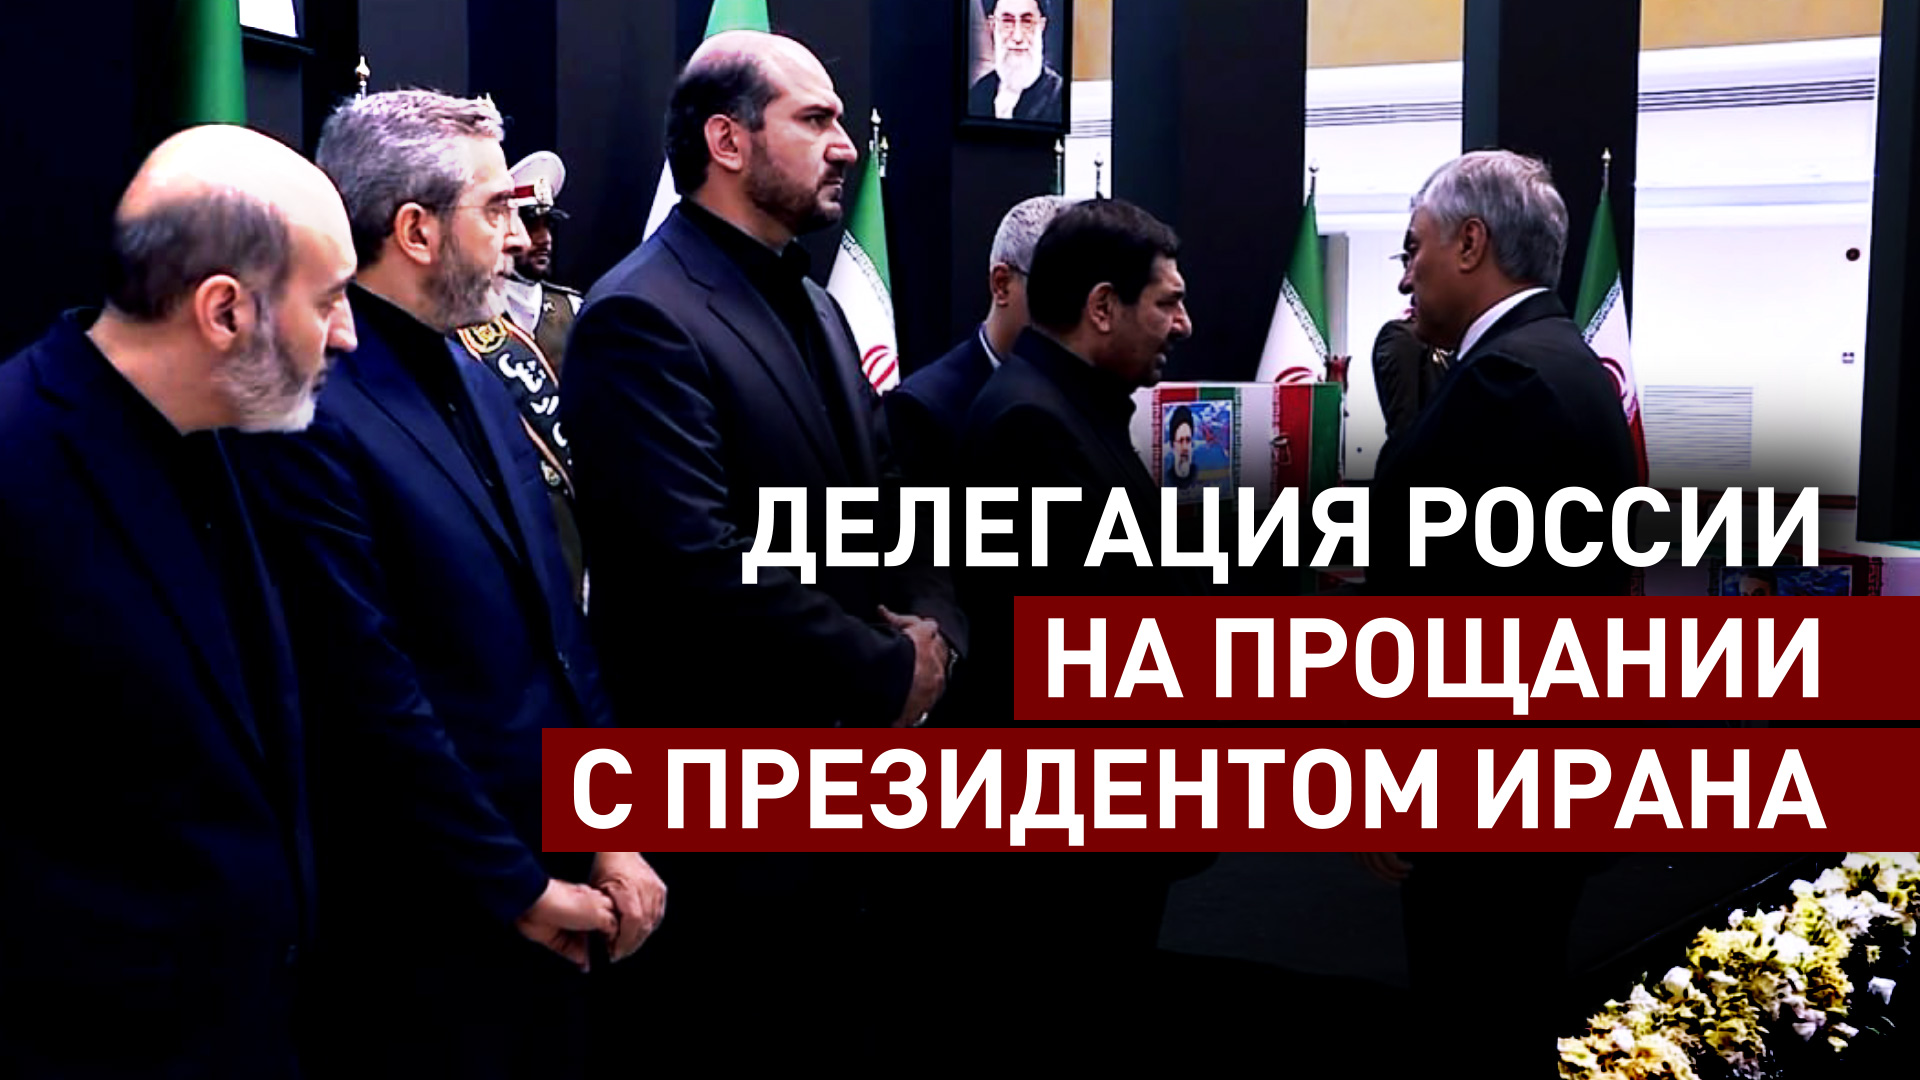 Володин посетил церемонию прощания с президентом Ирана Раиси